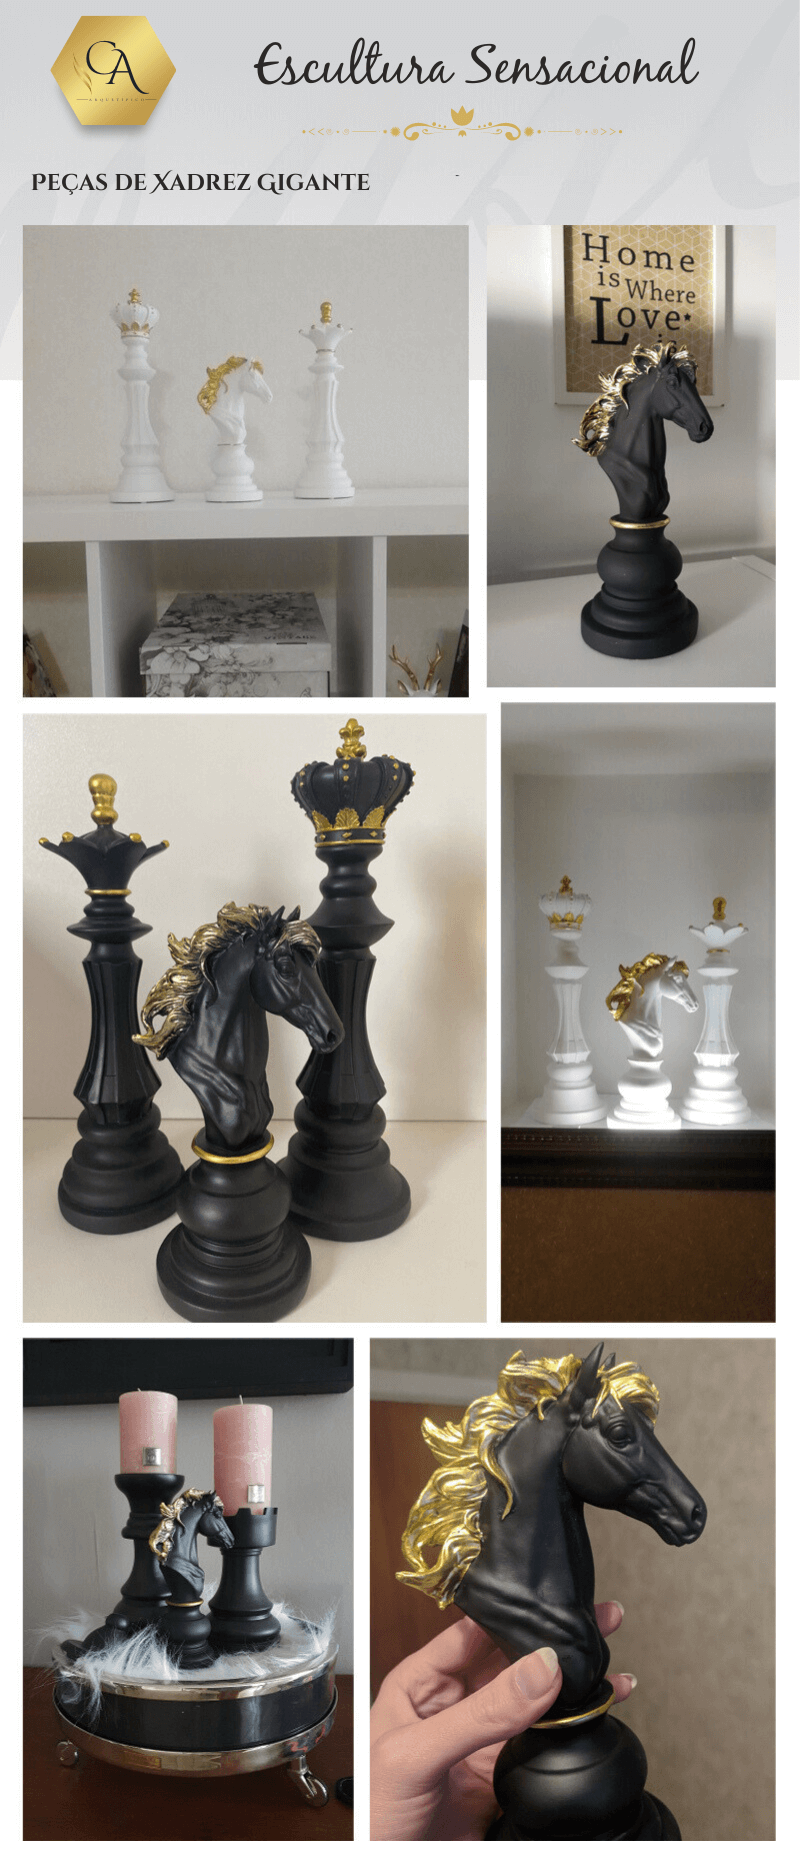 Qualidade premium e fascinante peças plásticas gigantes do xadrez